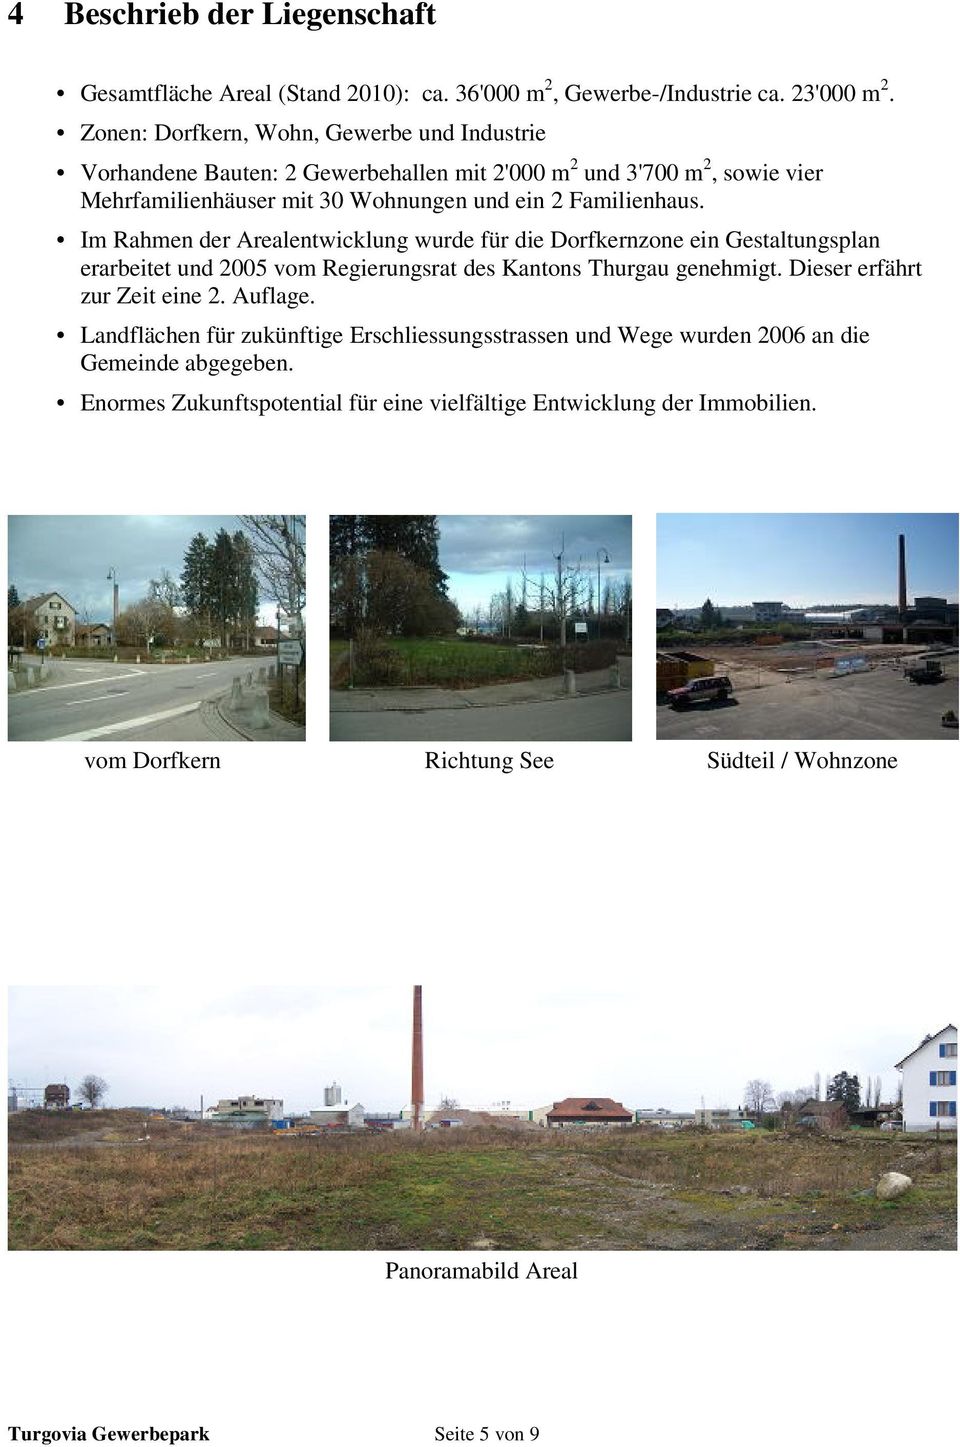 Im Rahmen der Arealentwicklung wurde für die Dorfkernzone ein Gestaltungsplan erarbeitet und 2005 vom Regierungsrat des Kantons Thurgau genehmigt. Dieser erfährt zur Zeit eine 2. Auflage.